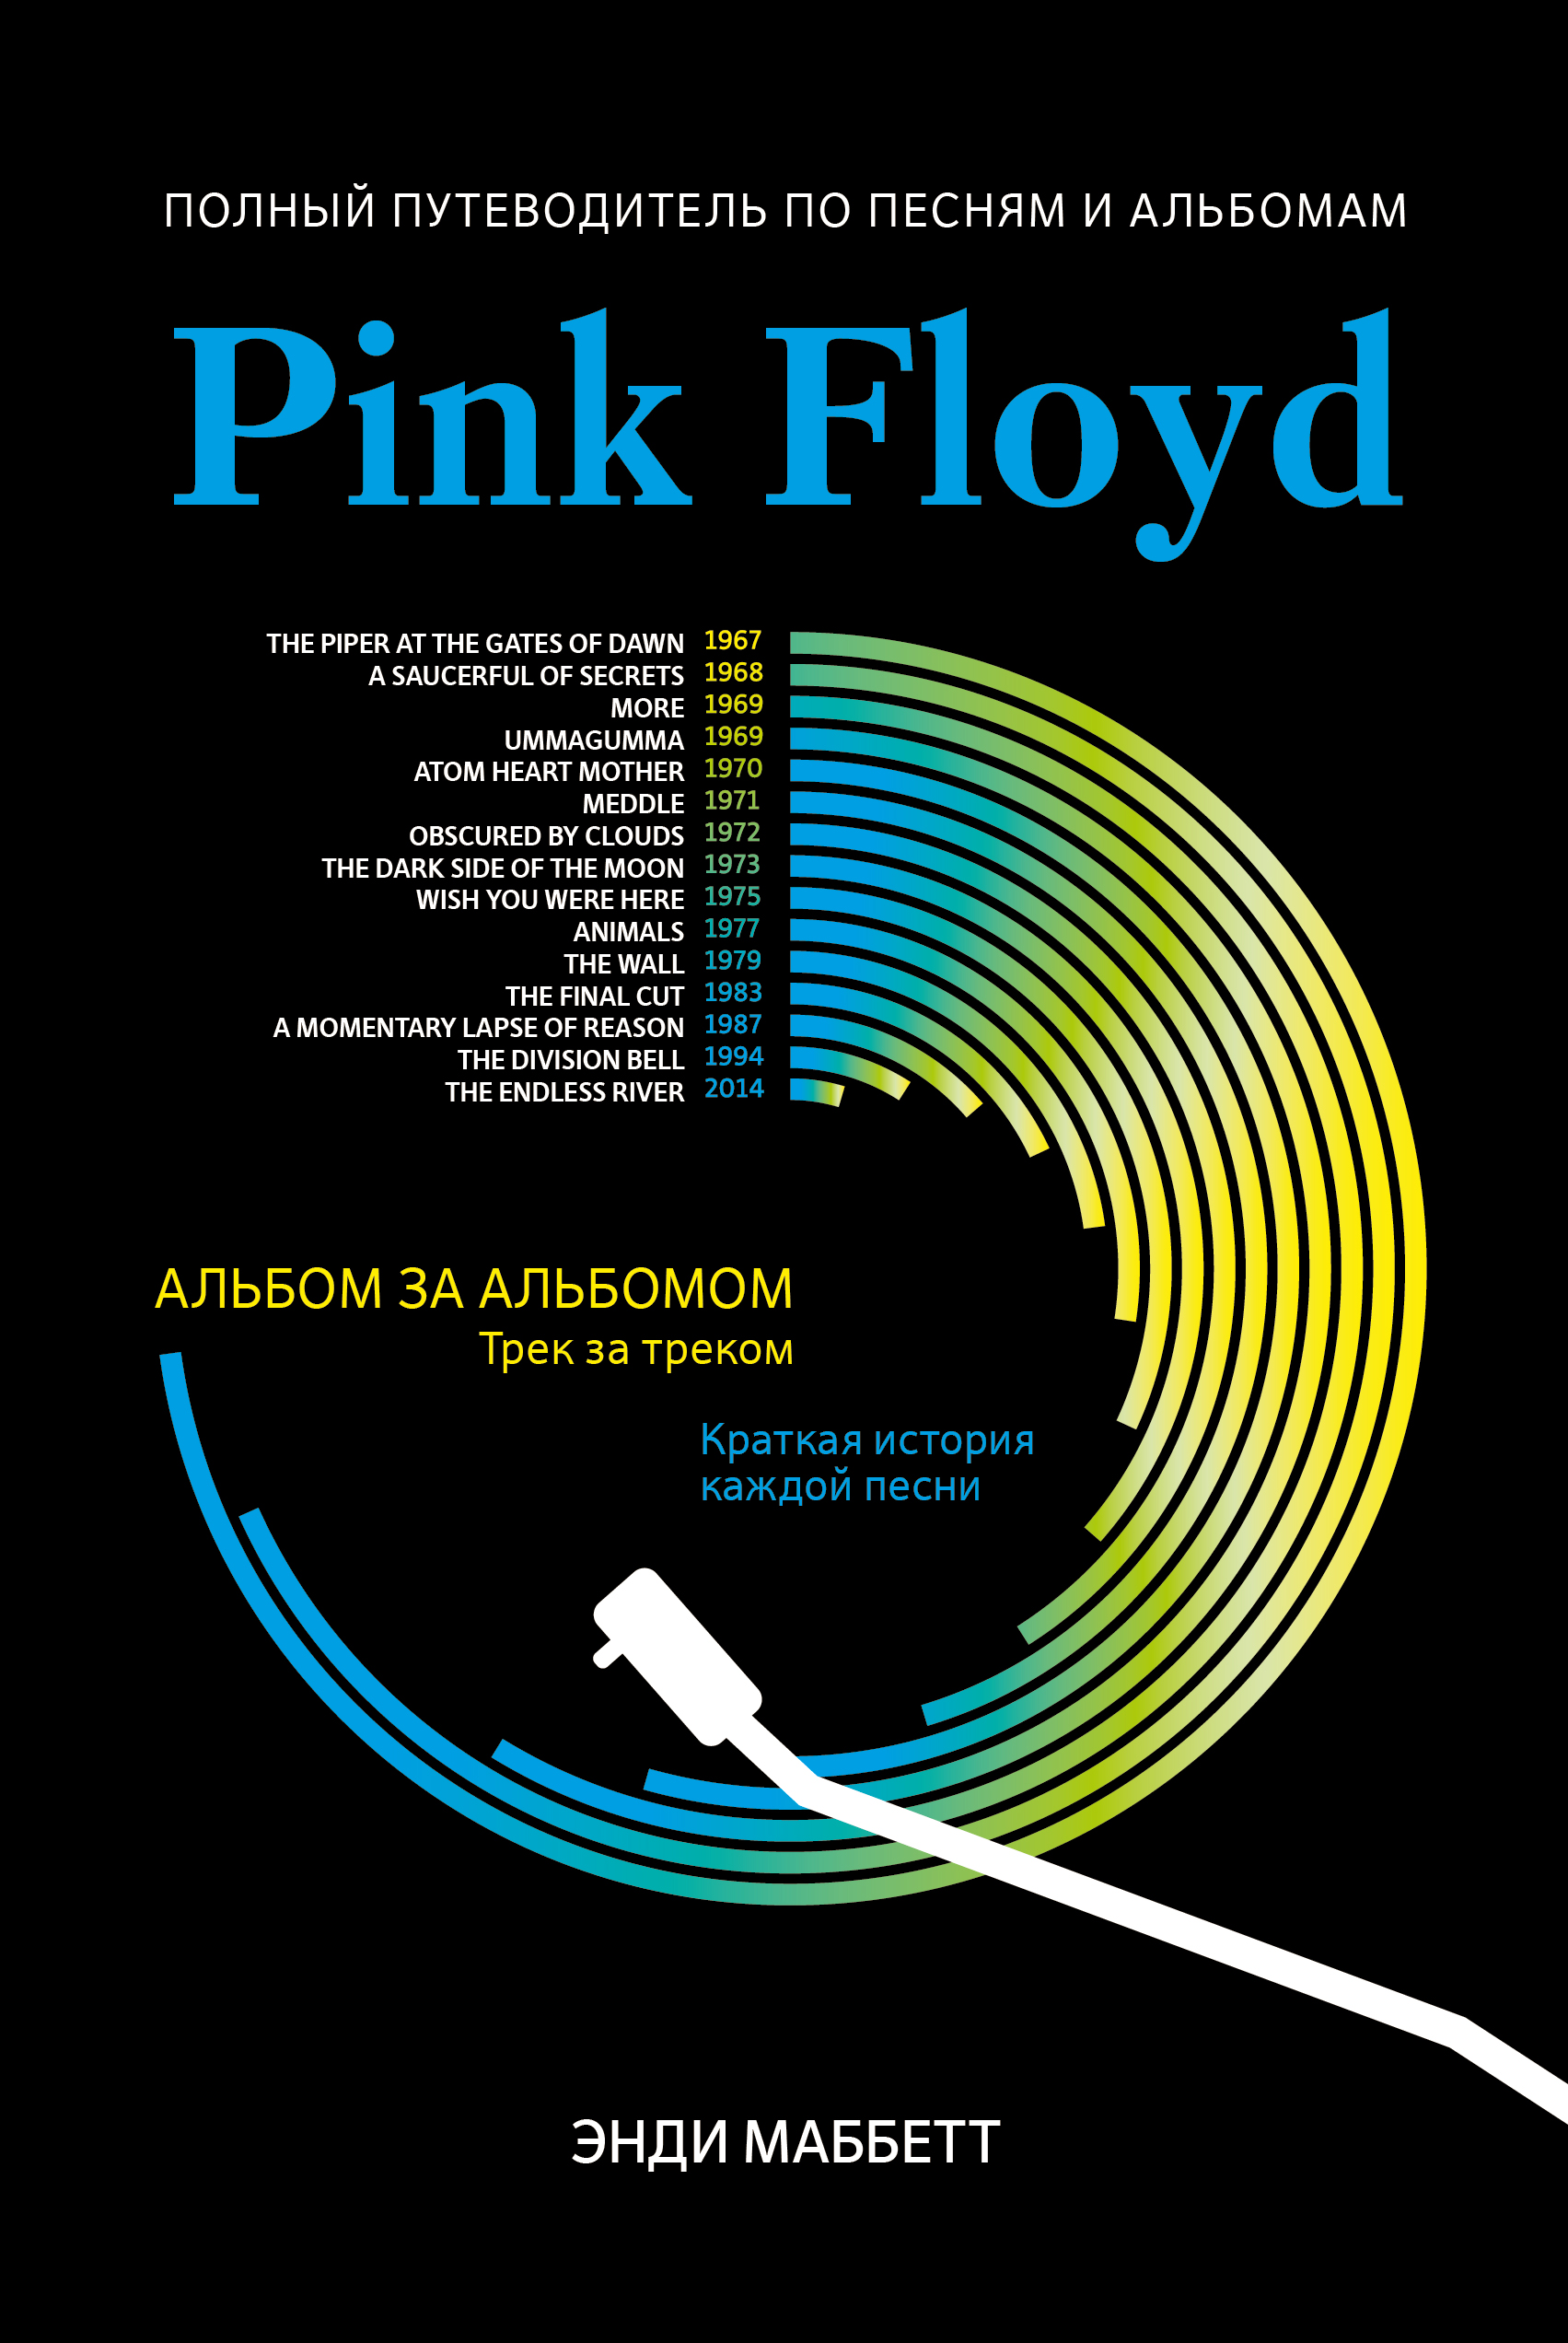 Маббетт Энди Pink Floyd: полный путеводитель по песням и альбомам